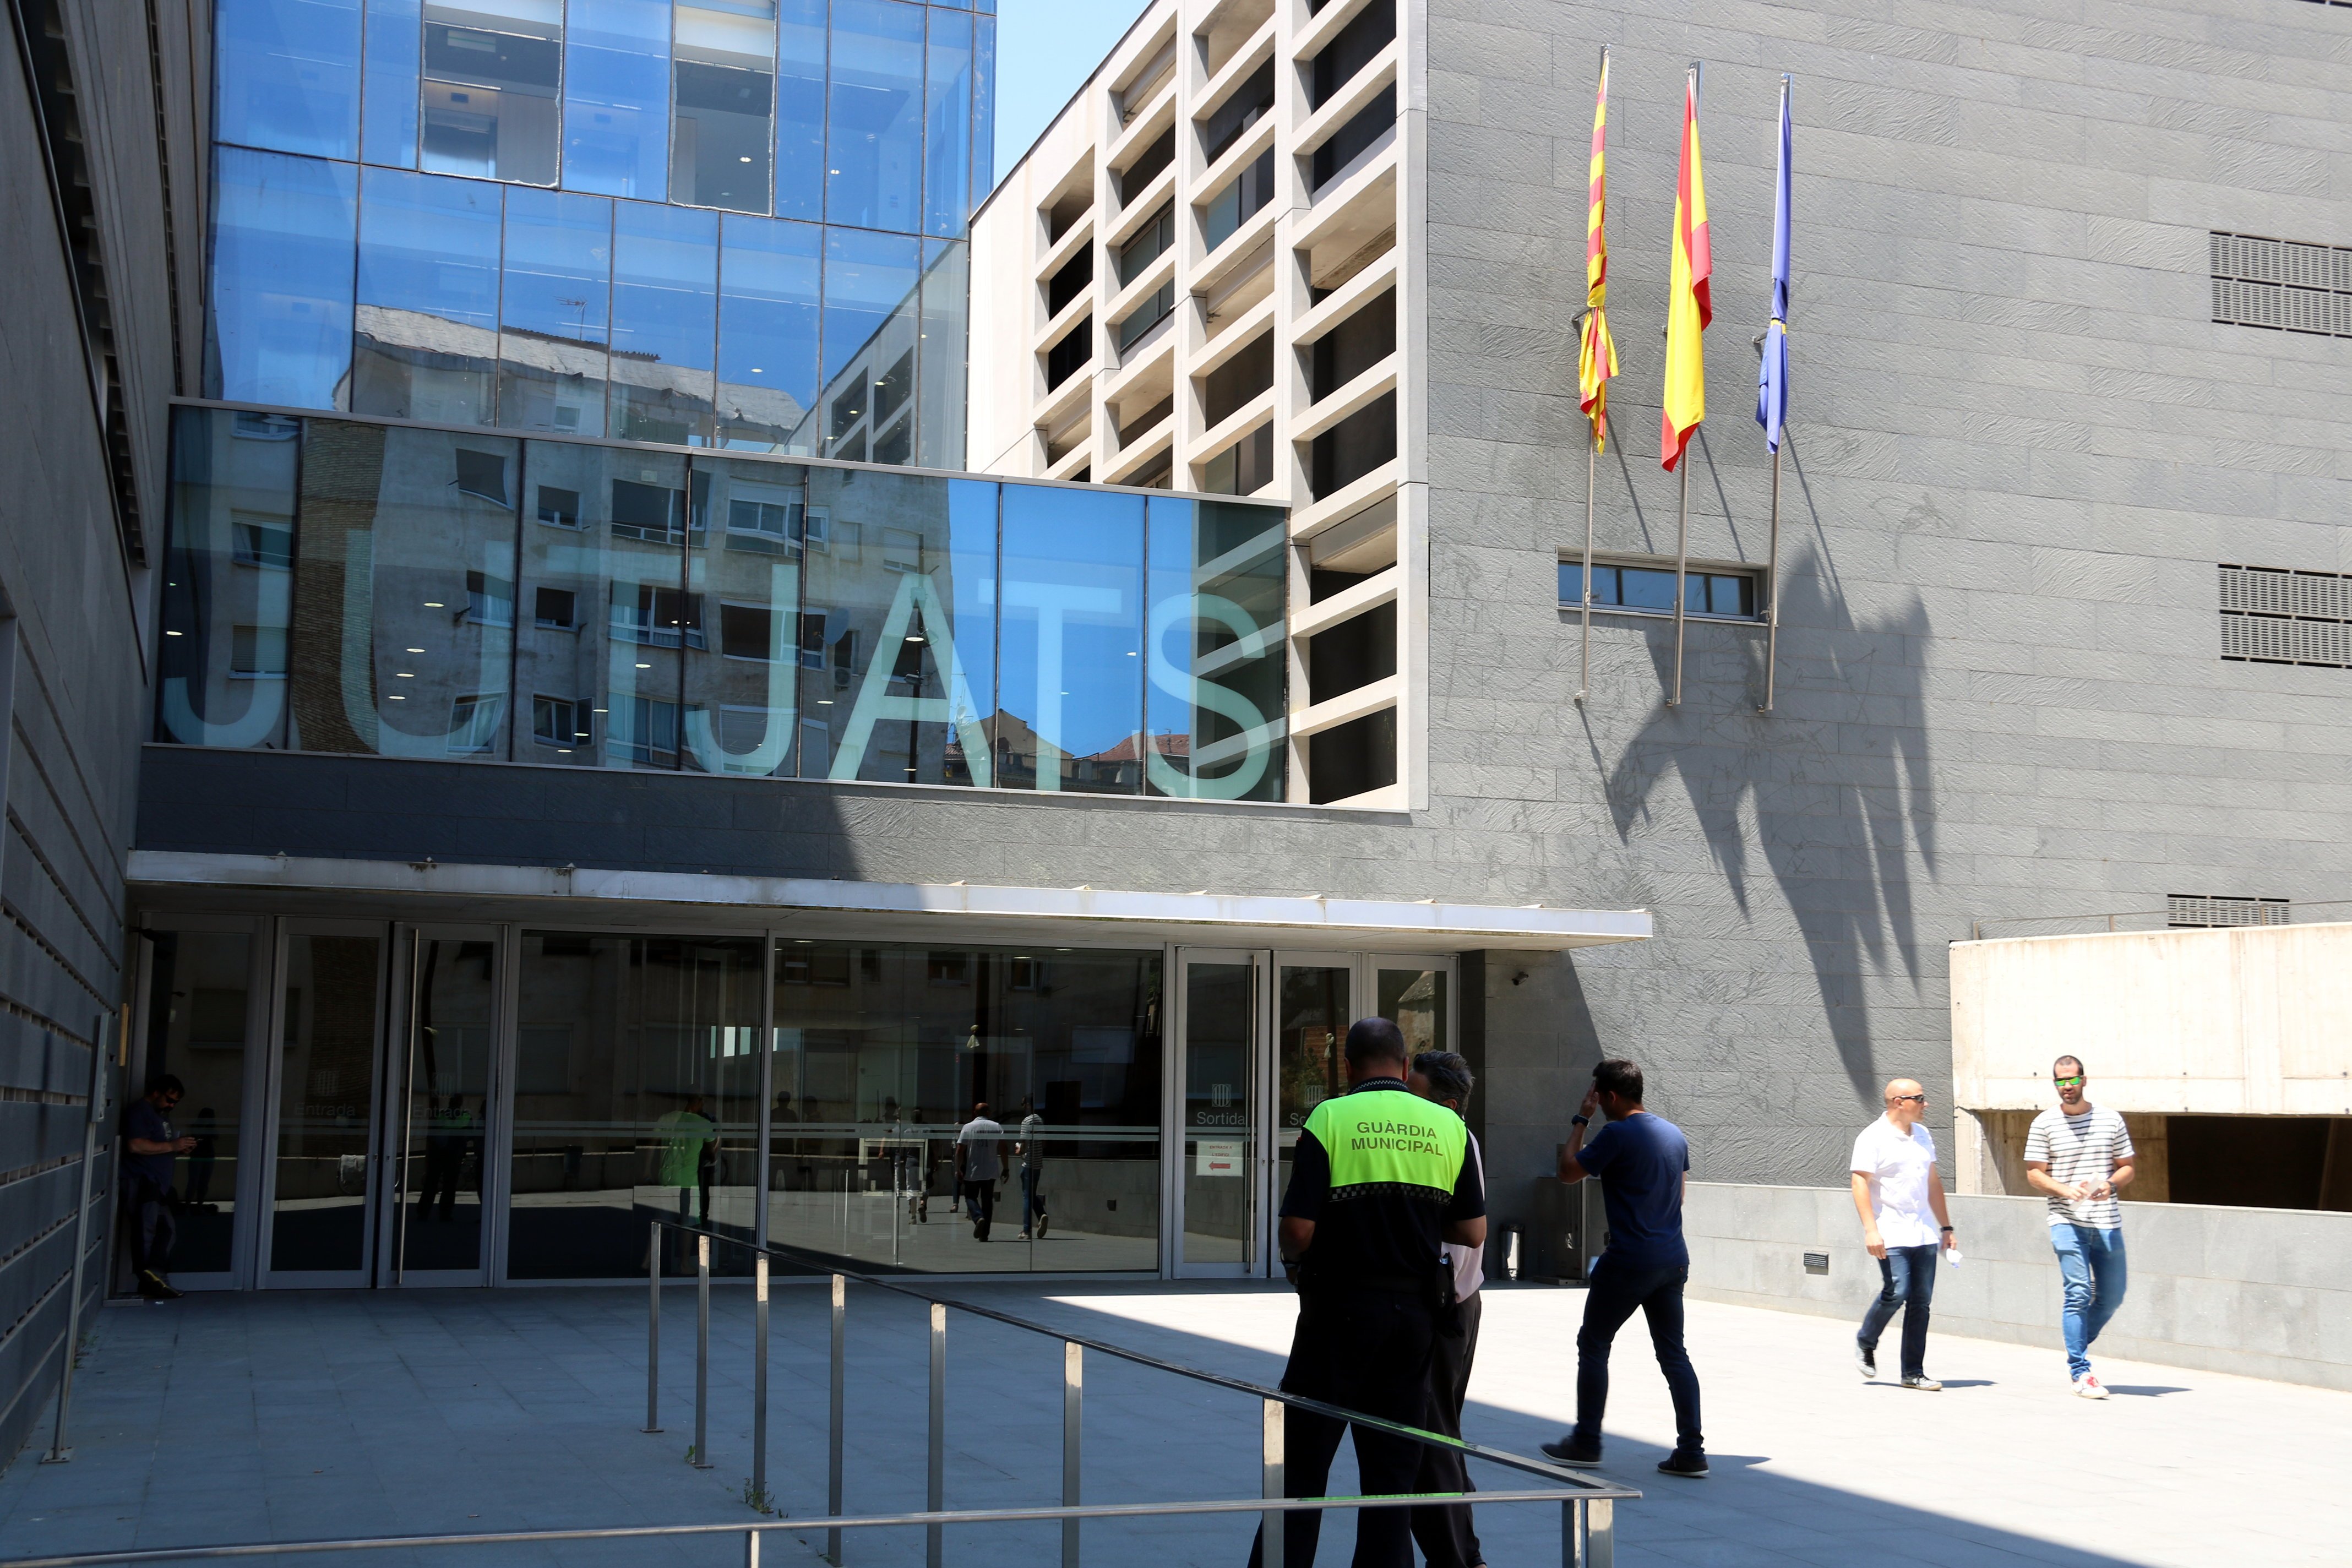 La jutge arxiva la causa per les càrregues de l'1-O a Castellgalí